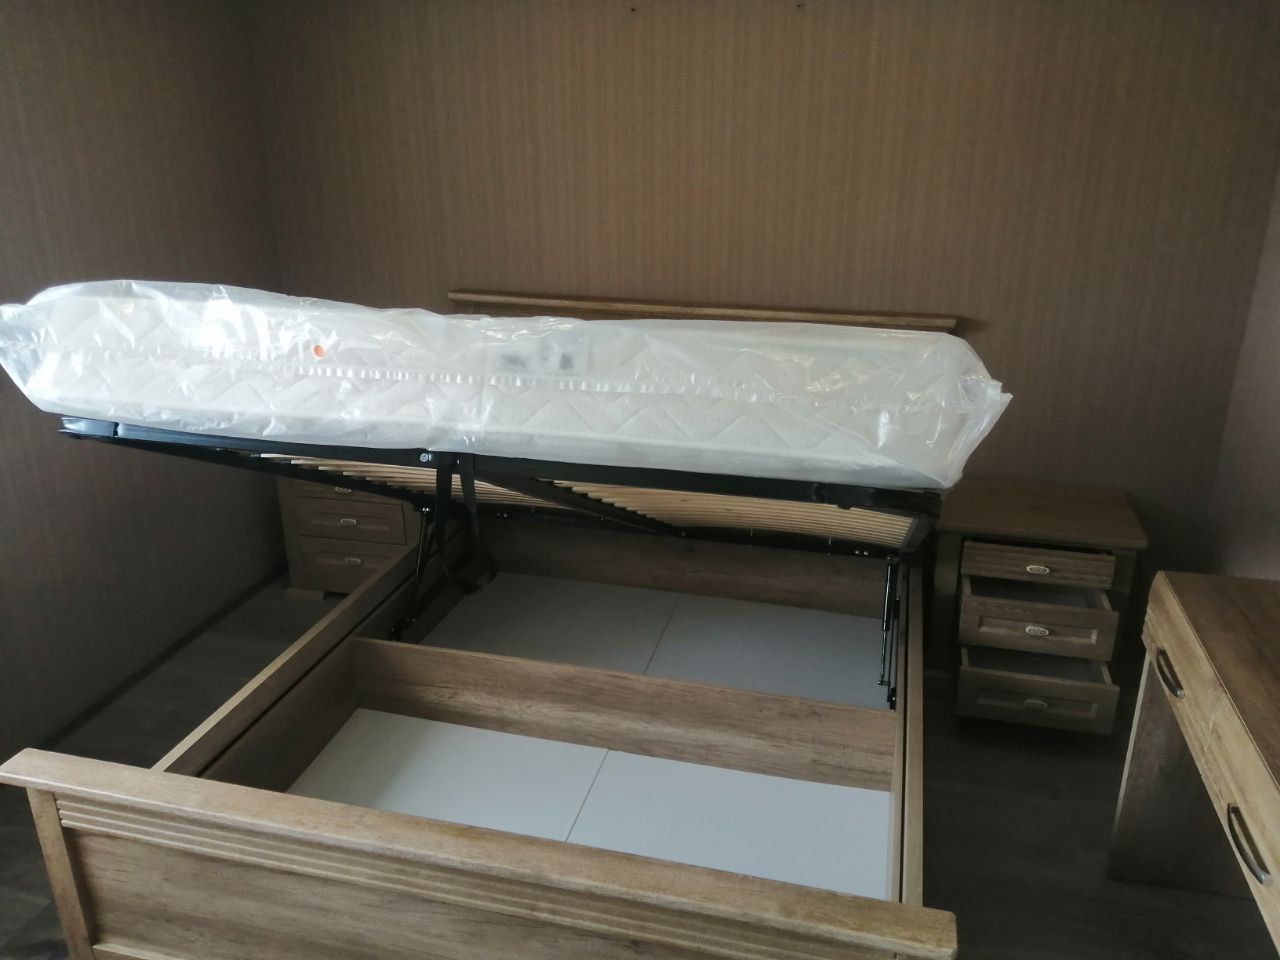 Двуспальная кровать "Верона" 140х190 с подъемным механизмом цвет бежевый изножье высокое